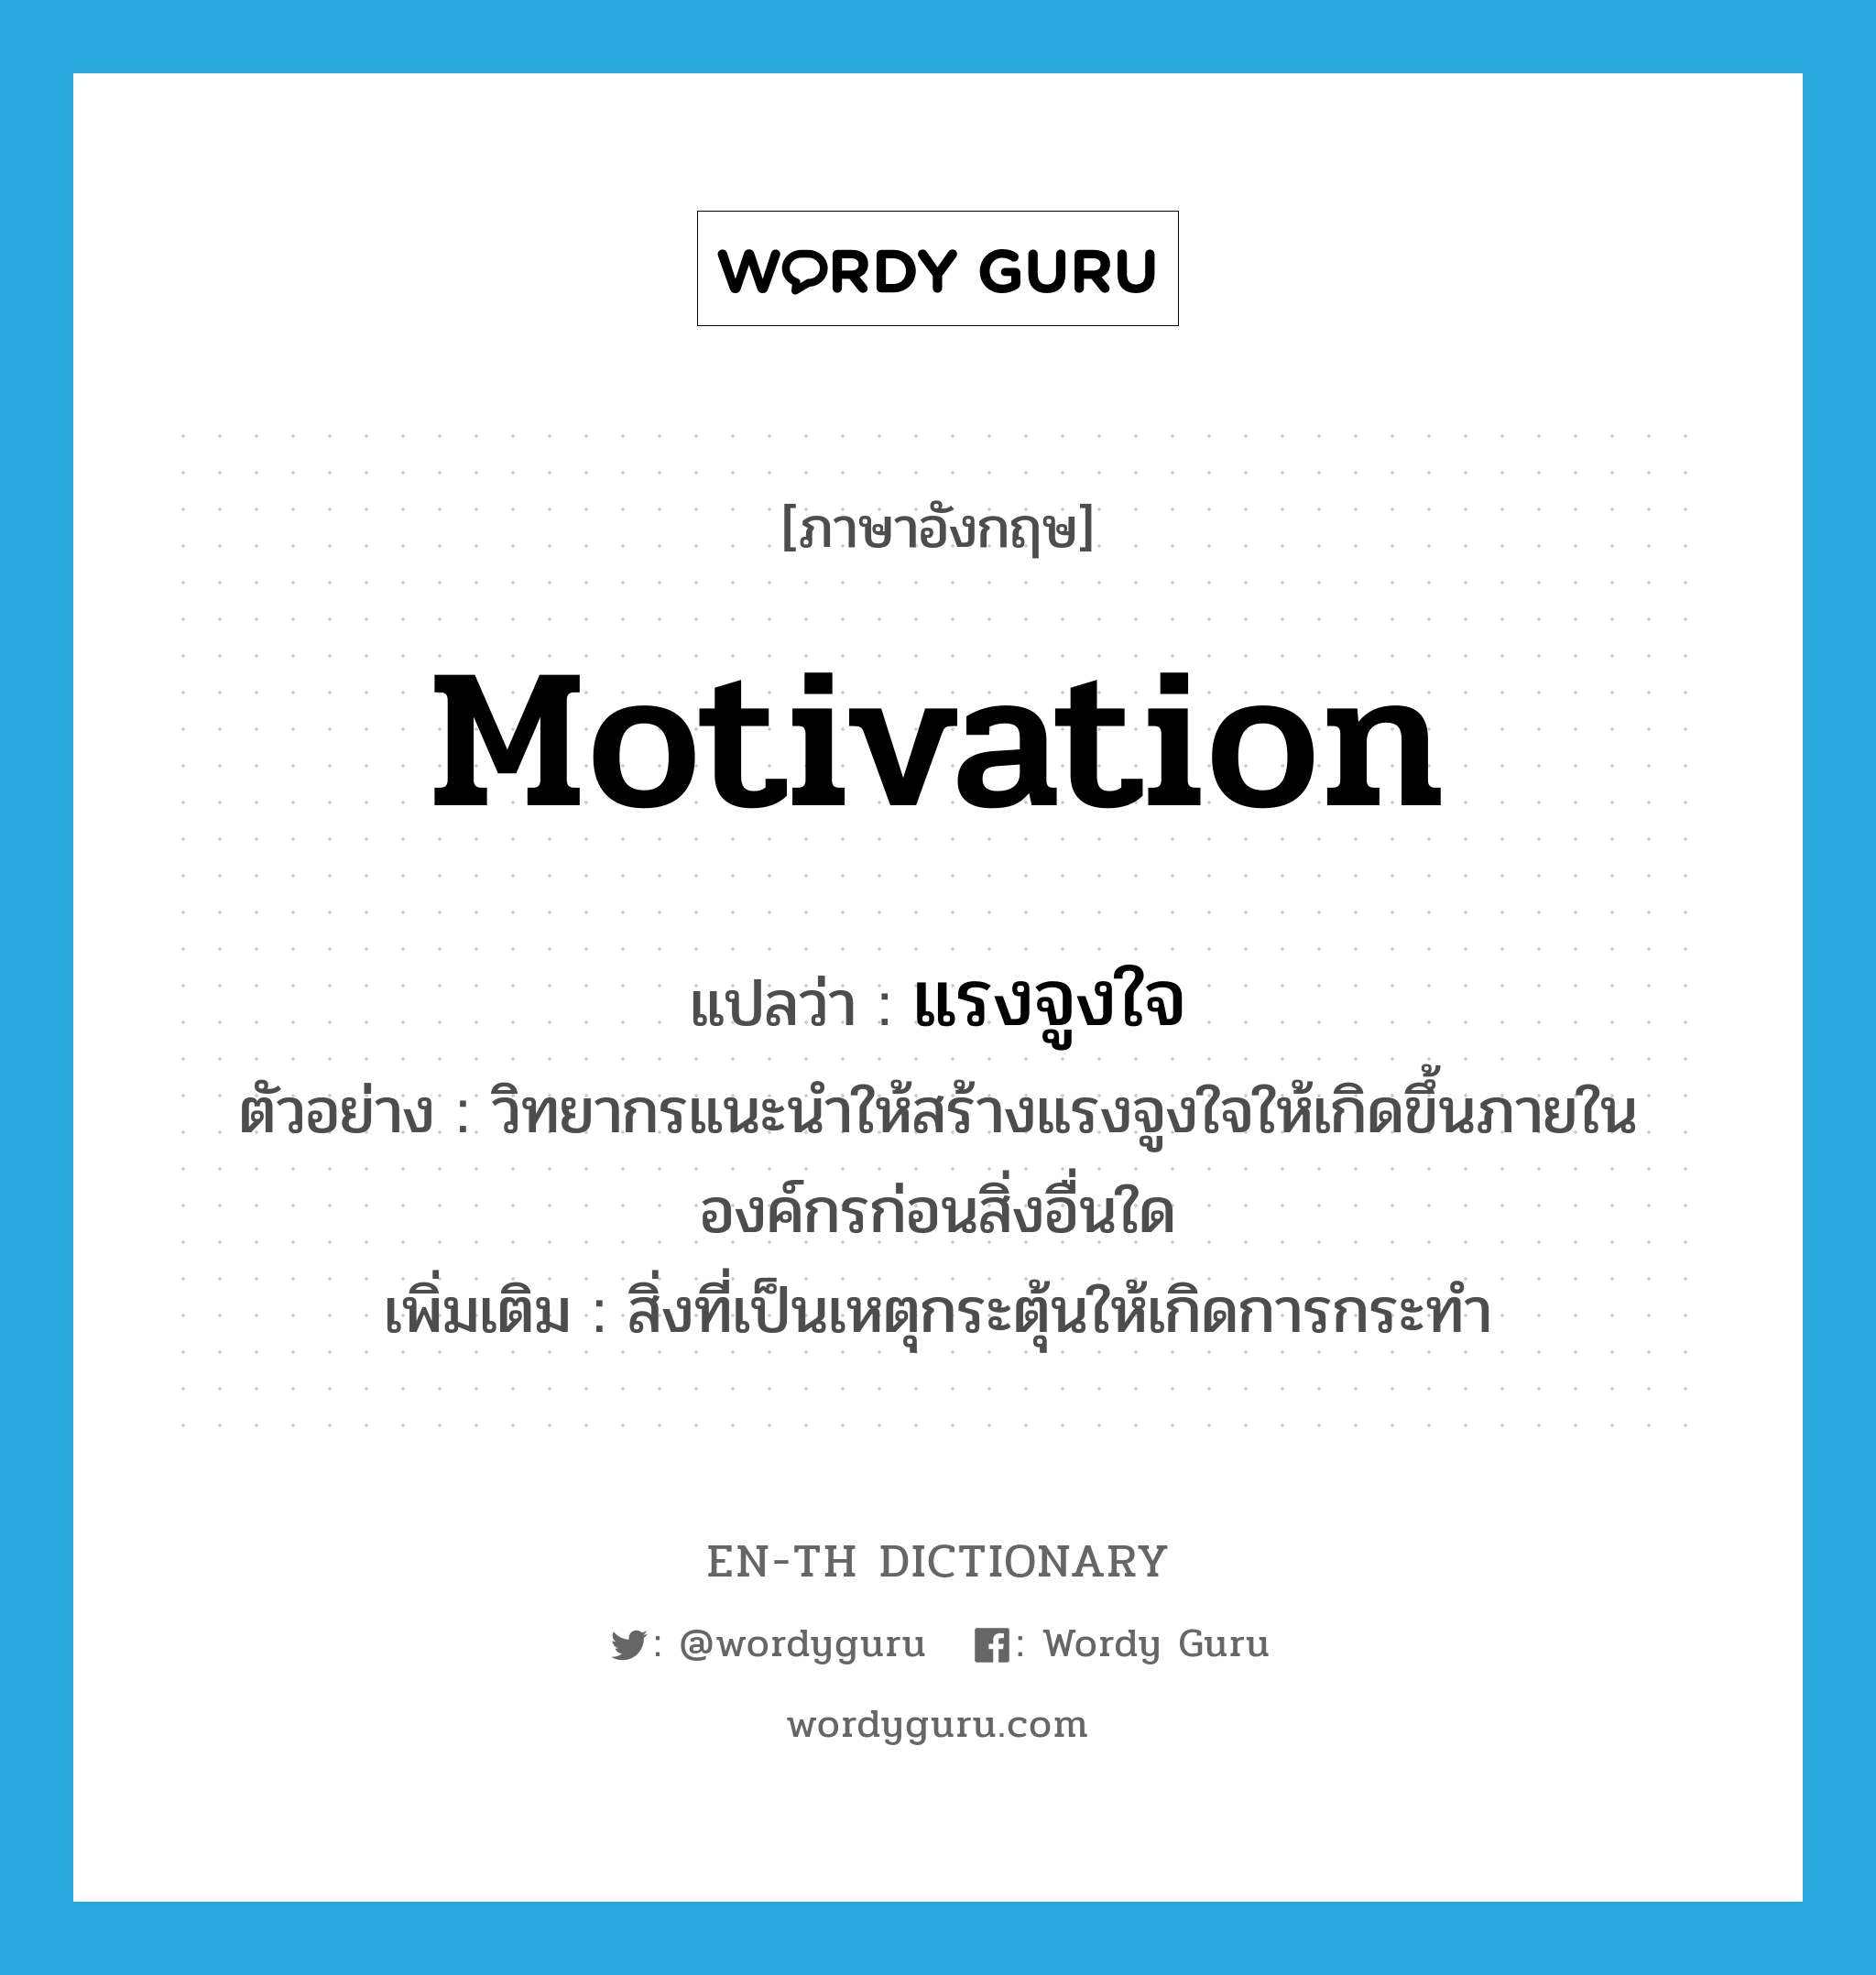 motivation แปลว่า?, คำศัพท์ภาษาอังกฤษ motivation แปลว่า แรงจูงใจ ประเภท N ตัวอย่าง วิทยากรแนะนำให้สร้างแรงจูงใจให้เกิดขึ้นภายในองค์กรก่อนสิ่งอื่นใด เพิ่มเติม สิ่งที่เป็นเหตุกระตุ้นให้เกิดการกระทำ หมวด N